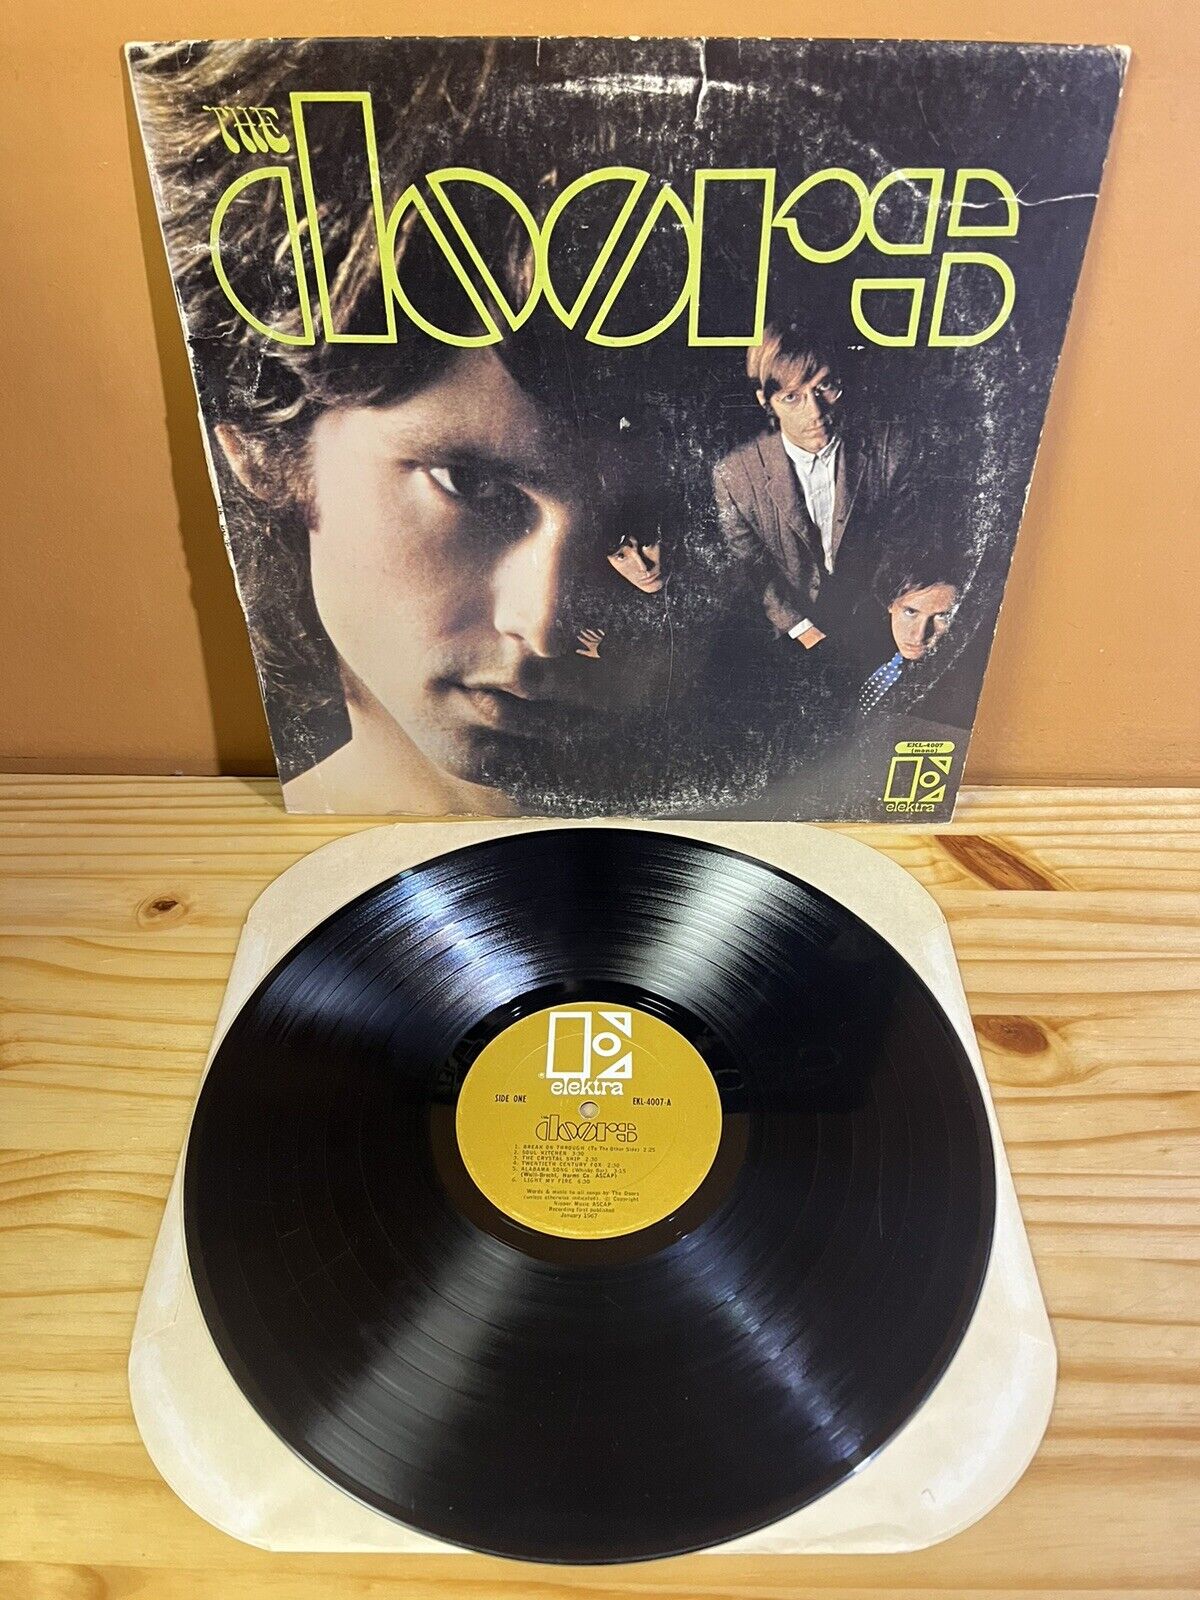 The Doors – The Doors 1967 MONO EKL-4007 LP Record G+G+